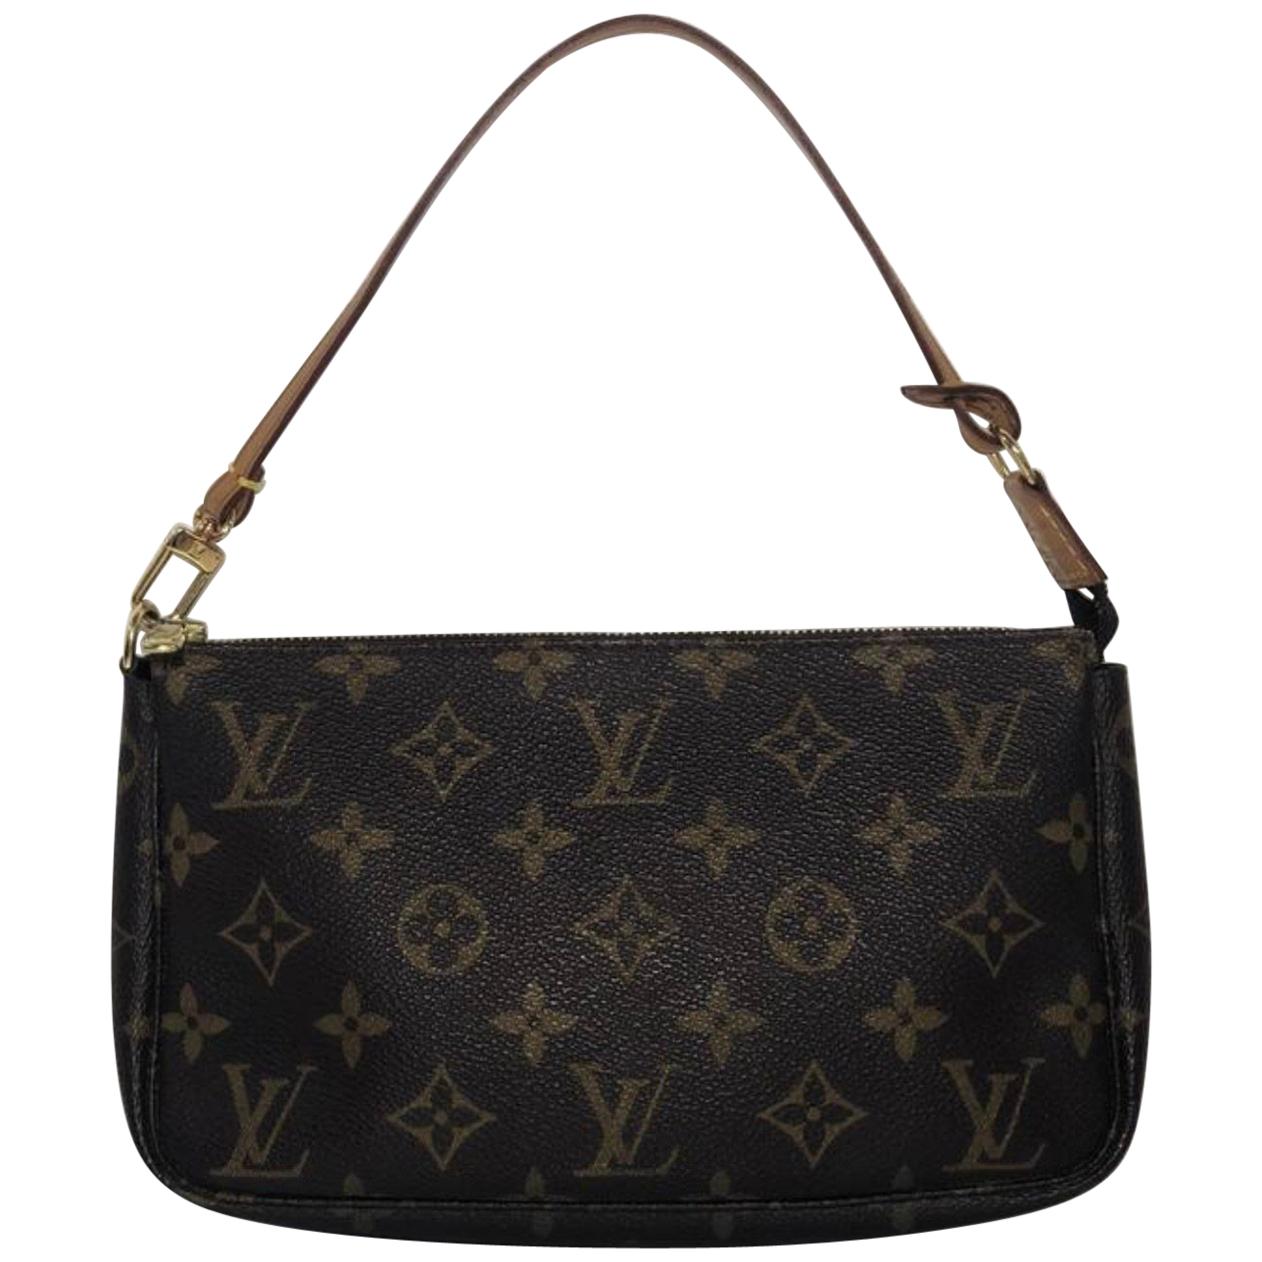  Louis Vuitton Monogram Pochette Accessories Wristlet Handbag For Sale